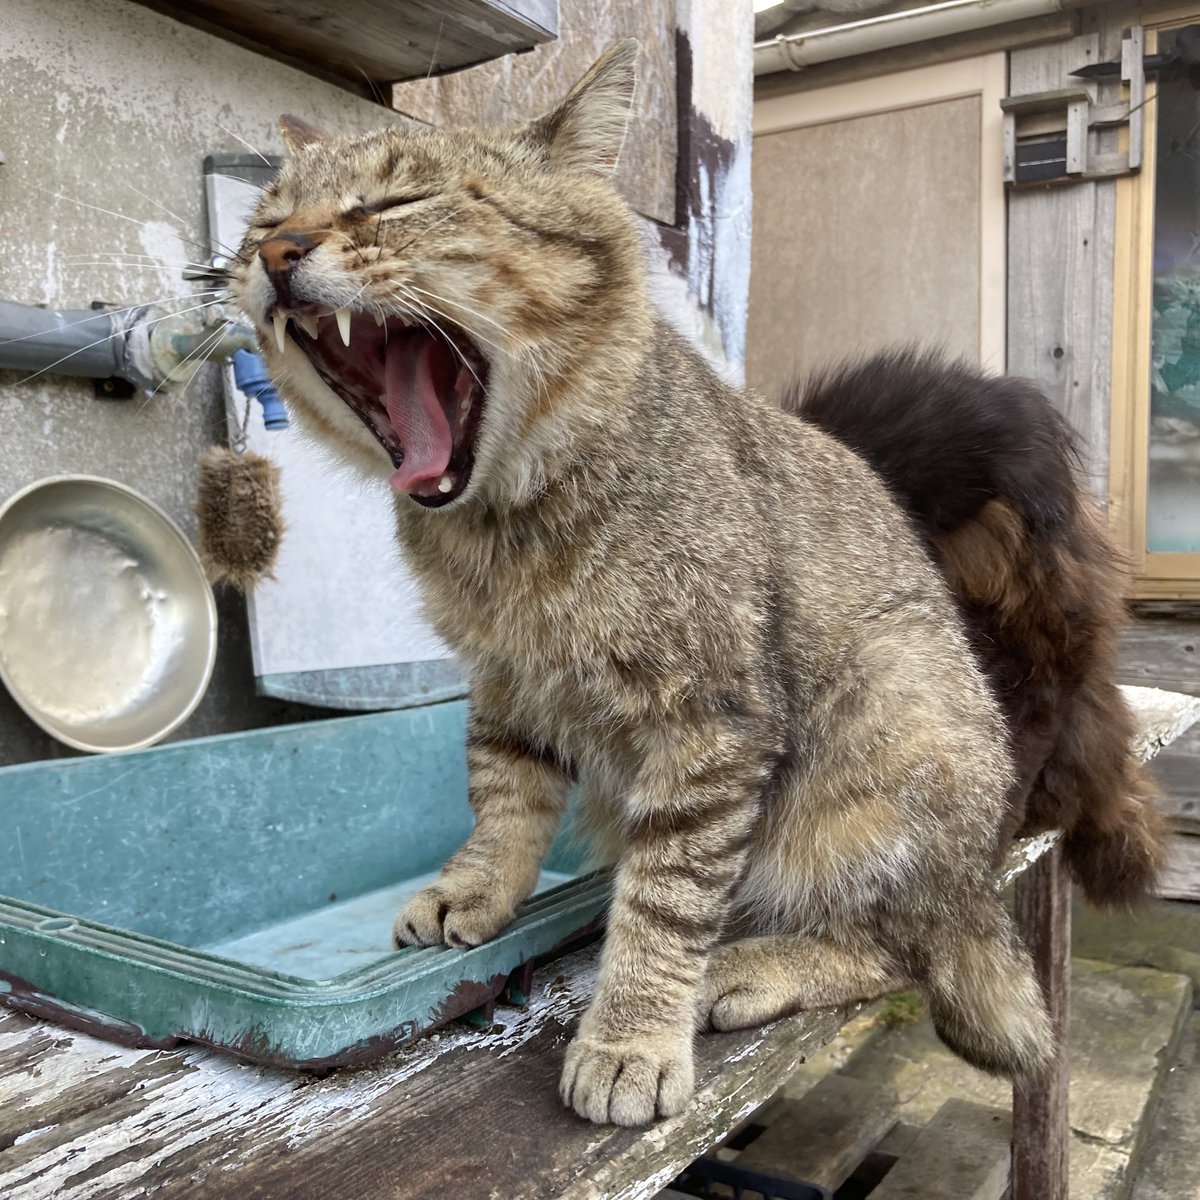 夕方の庭。
出遅れたご飯係を待っていてくれた皆さん😸😺🐱😼

#田代島 #ねこ #tashirojima #CatsOnX #CatsOnTwitter #catlover